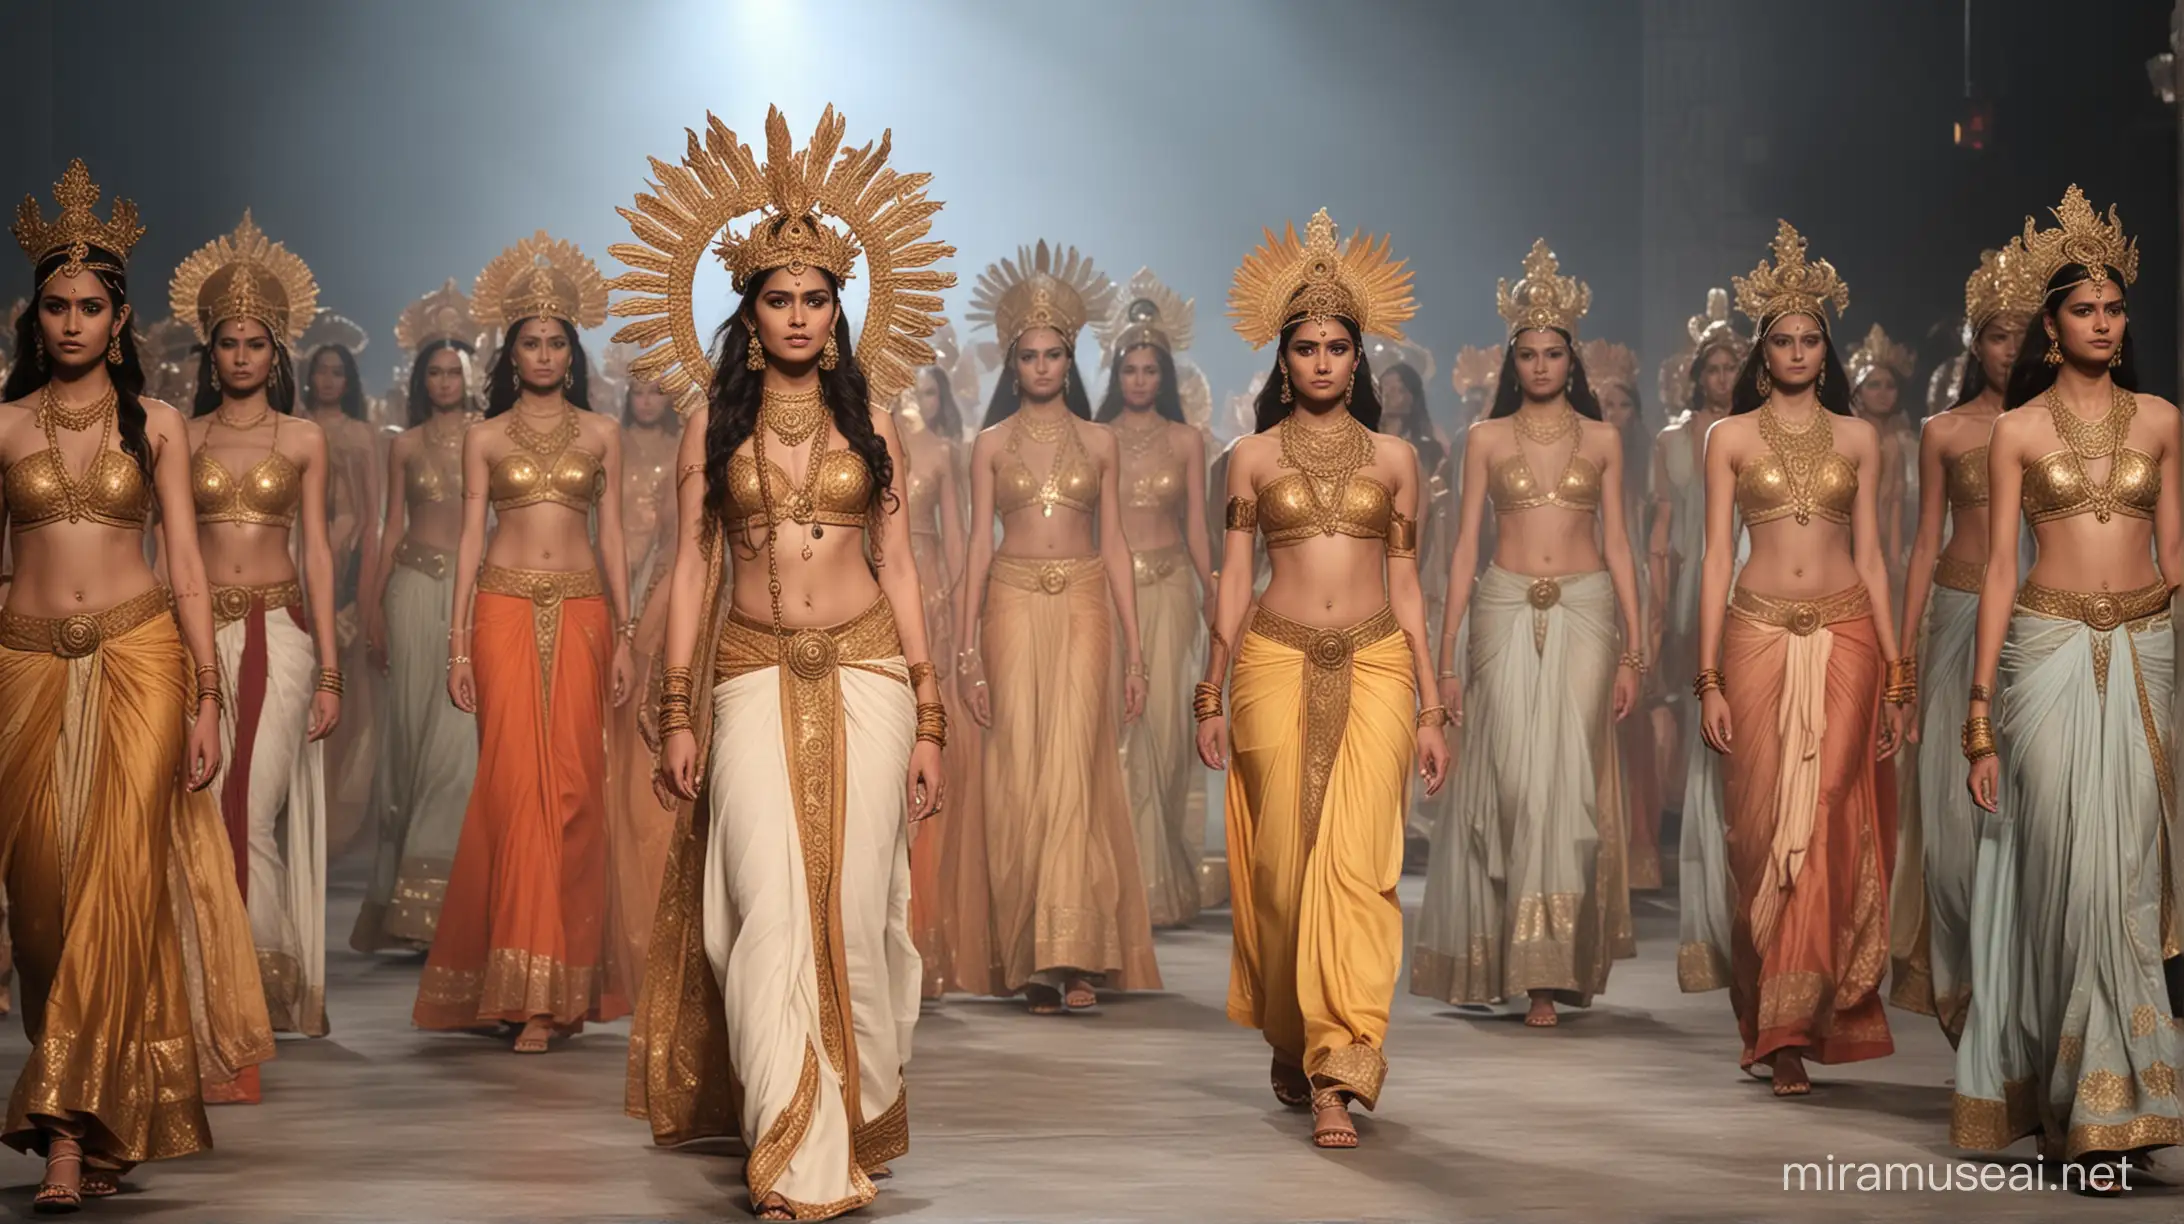 fashion show based on Hindu mythology heaven concept 